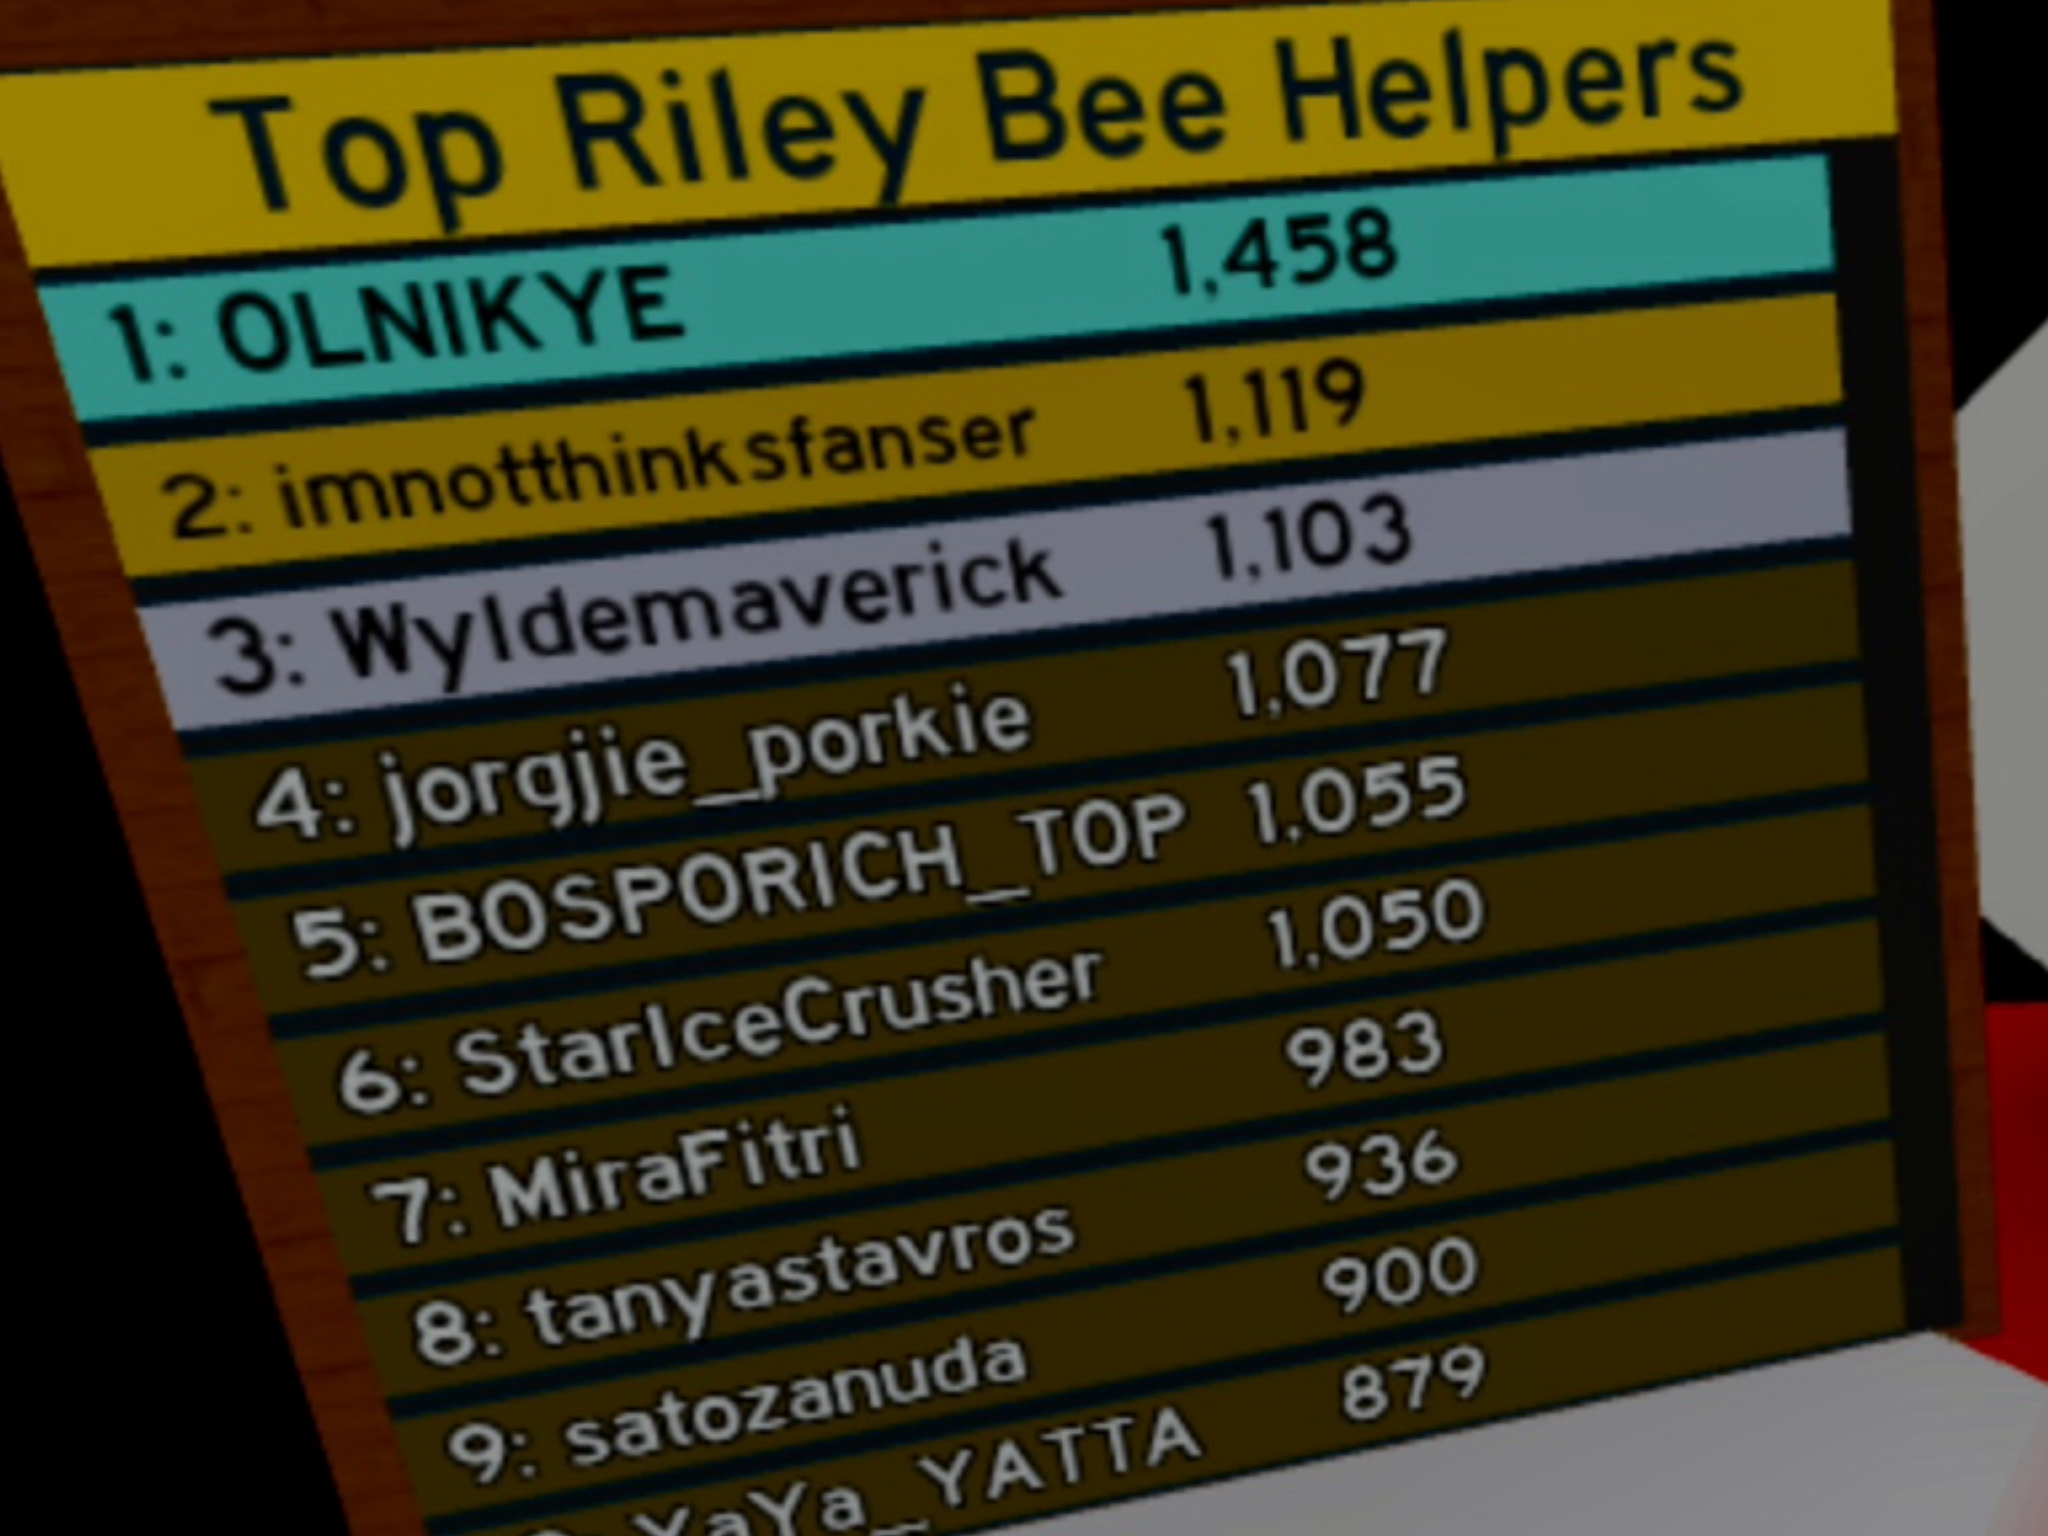 Top Riley Bee Helpers Bee Swarm Simulator Wiki Fandom - roblox bee swarm simulator riley bee